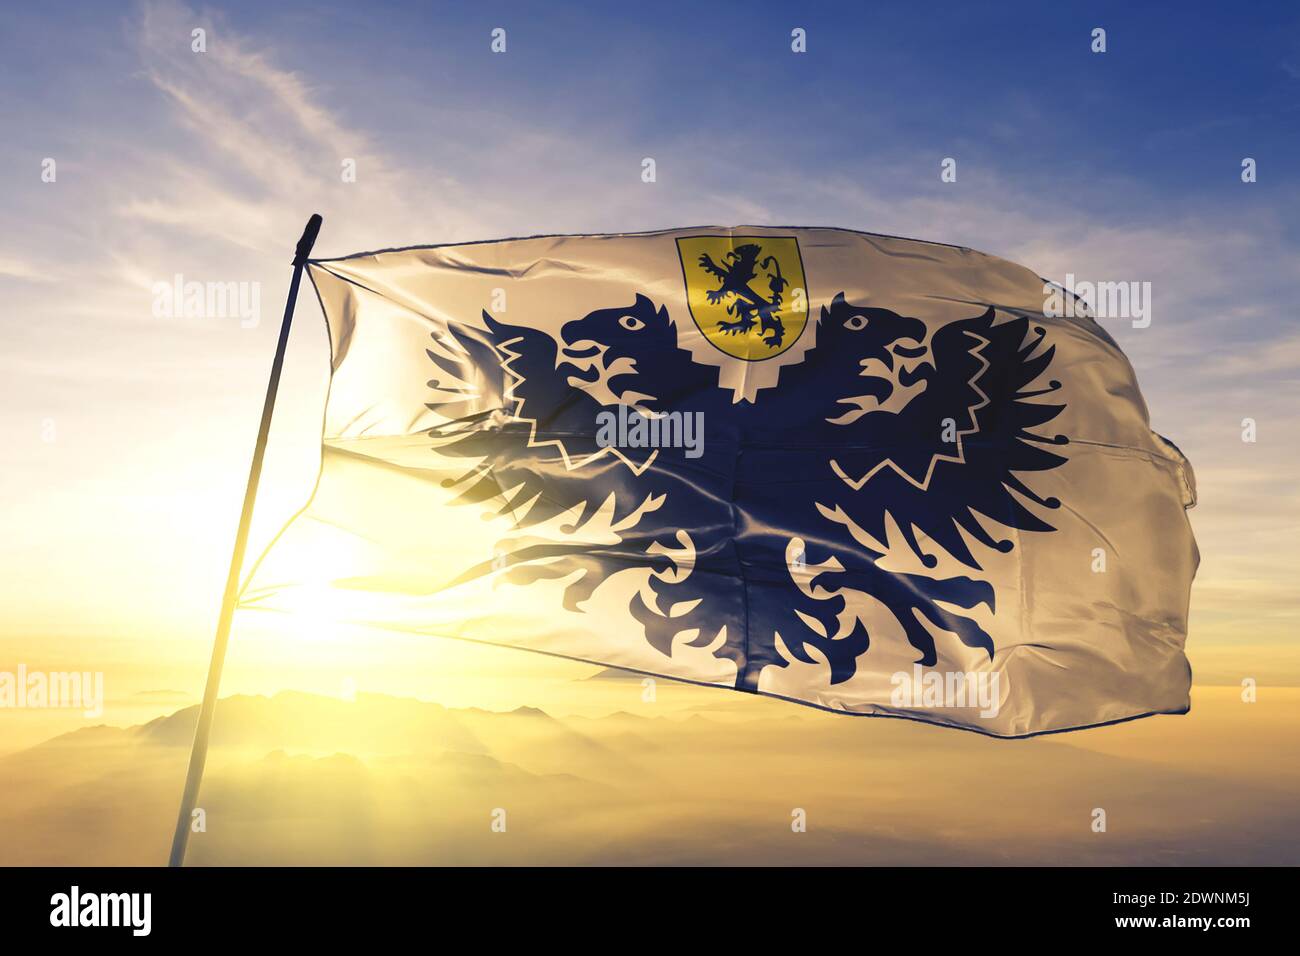 LO-Reninge de Flandre Occidentale de Belgique drapeau sur le brume de lever de soleil supérieure Banque D'Images